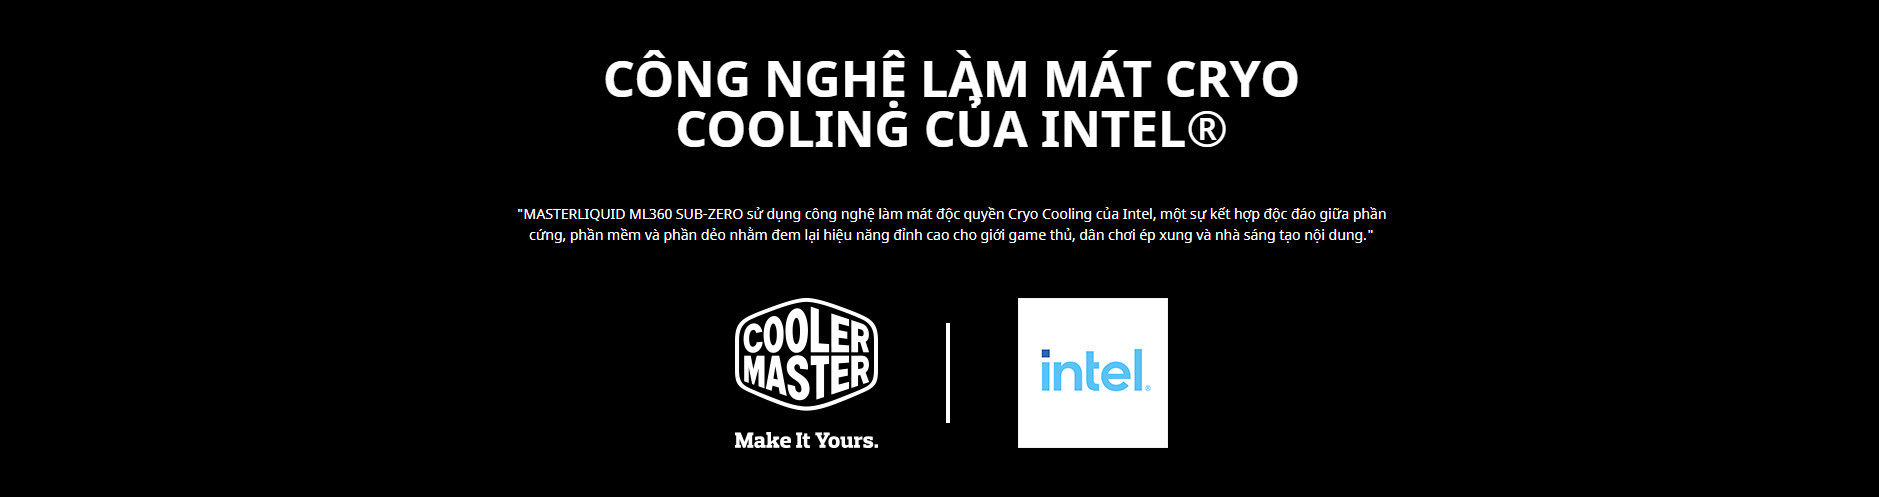 Tản nhiệt nước Cooler Master ML360 SUB - ZERO với CÔNG NGHỆ LÀM MÁT CRYO COOLING CỦA INTEL®